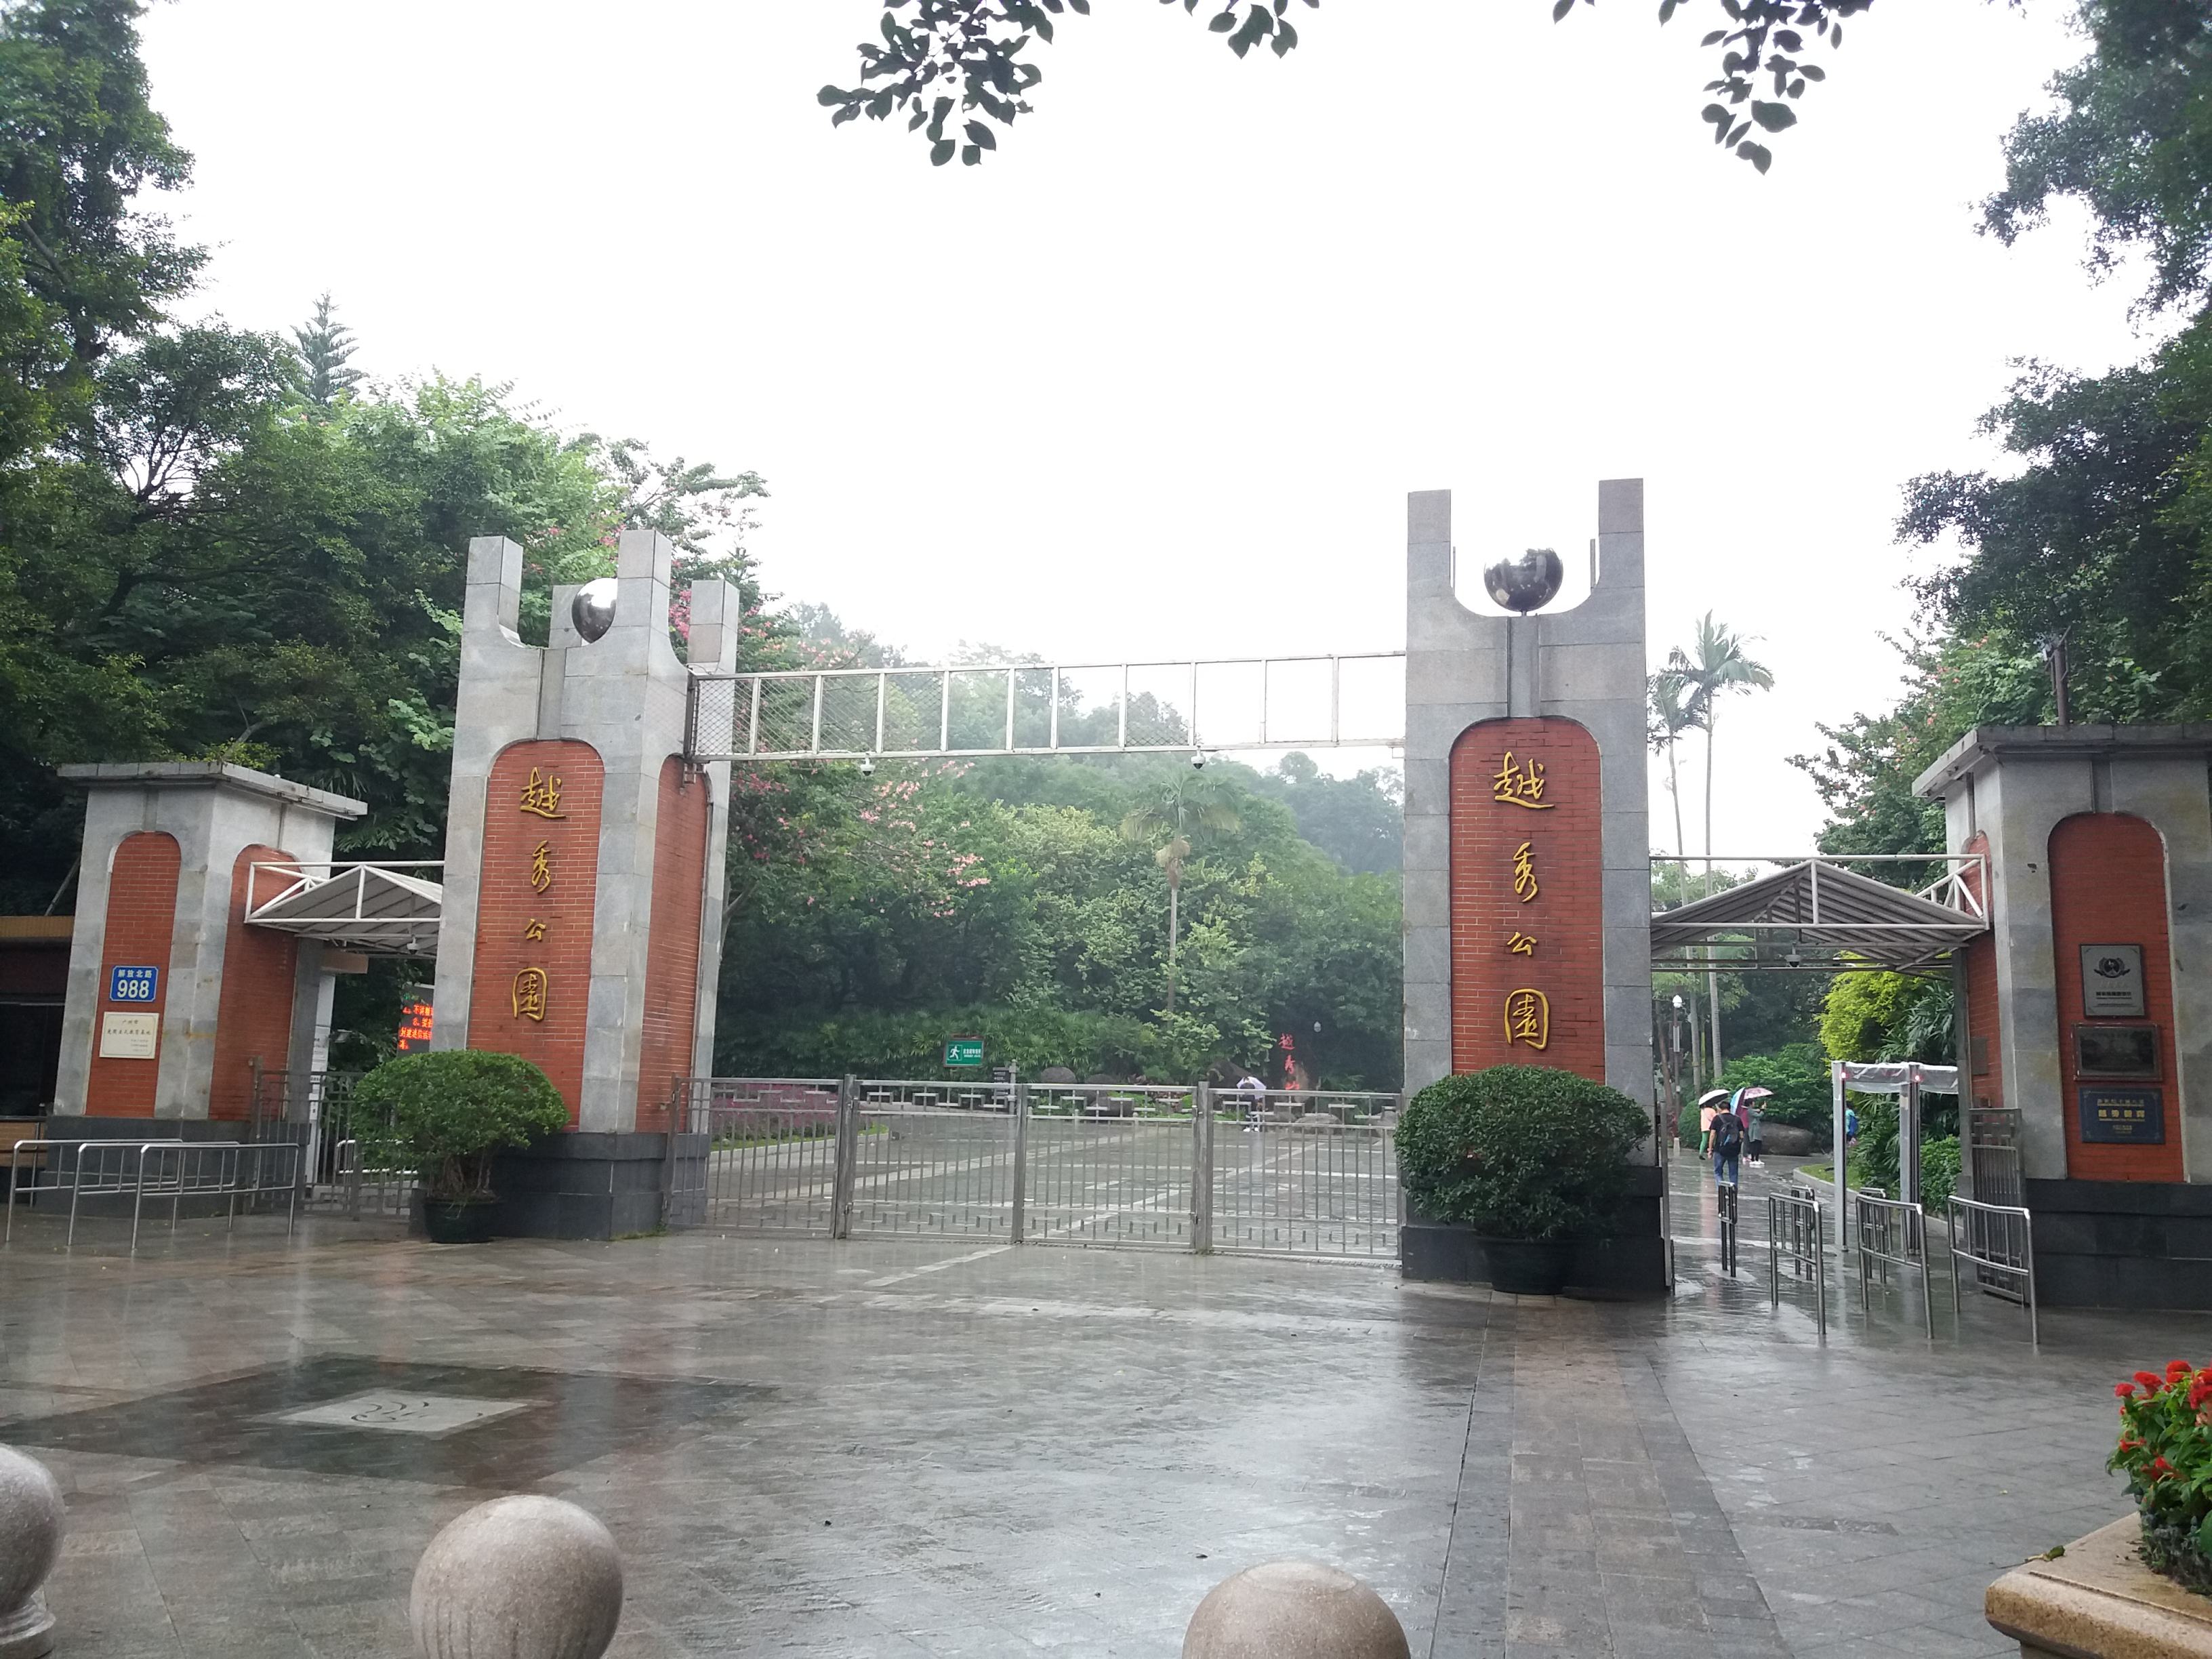 12_Days_China_Tour_of_Beijing_Xi'an_Guili_Guangzhou_and_Hong_Kong_10.jpg